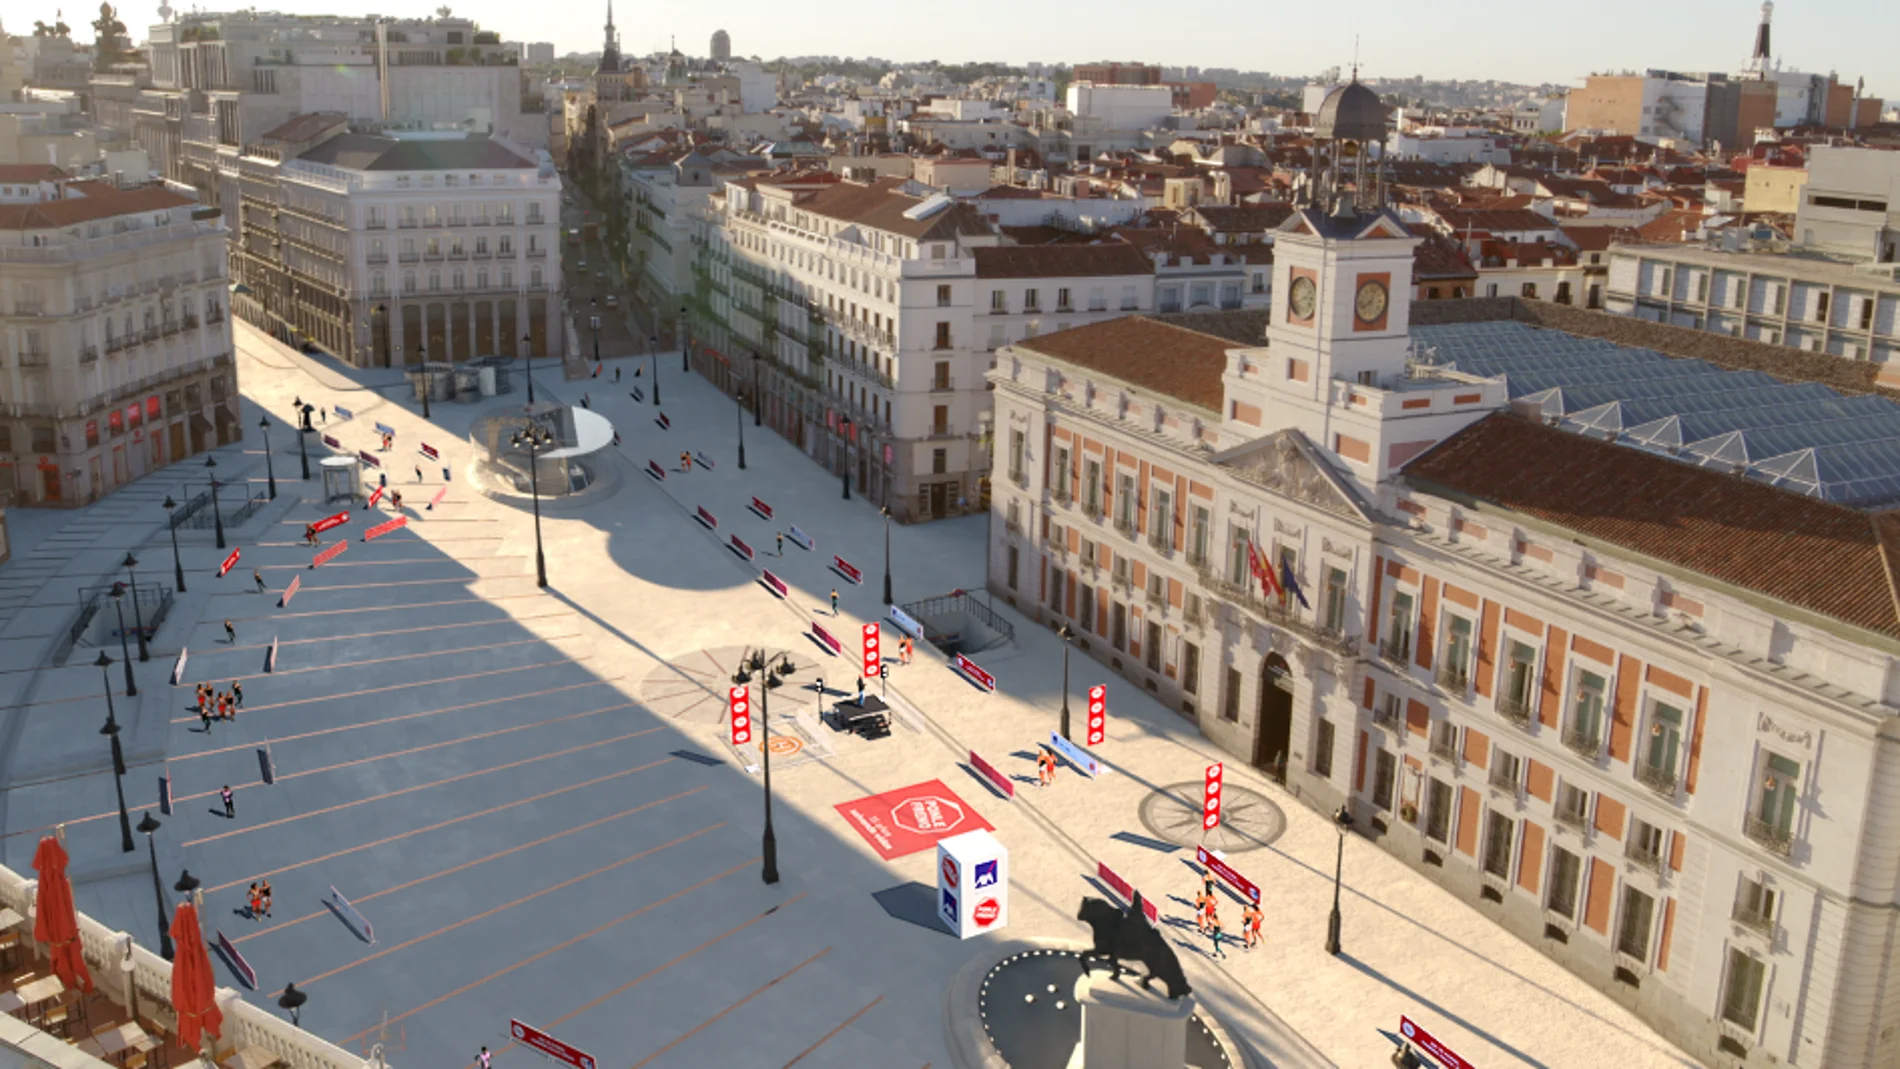 Recreación de la Puerta del Sol preparada para la carrera Ponle Freno que se celebrará en Madrid el domingo 19 de noviembre